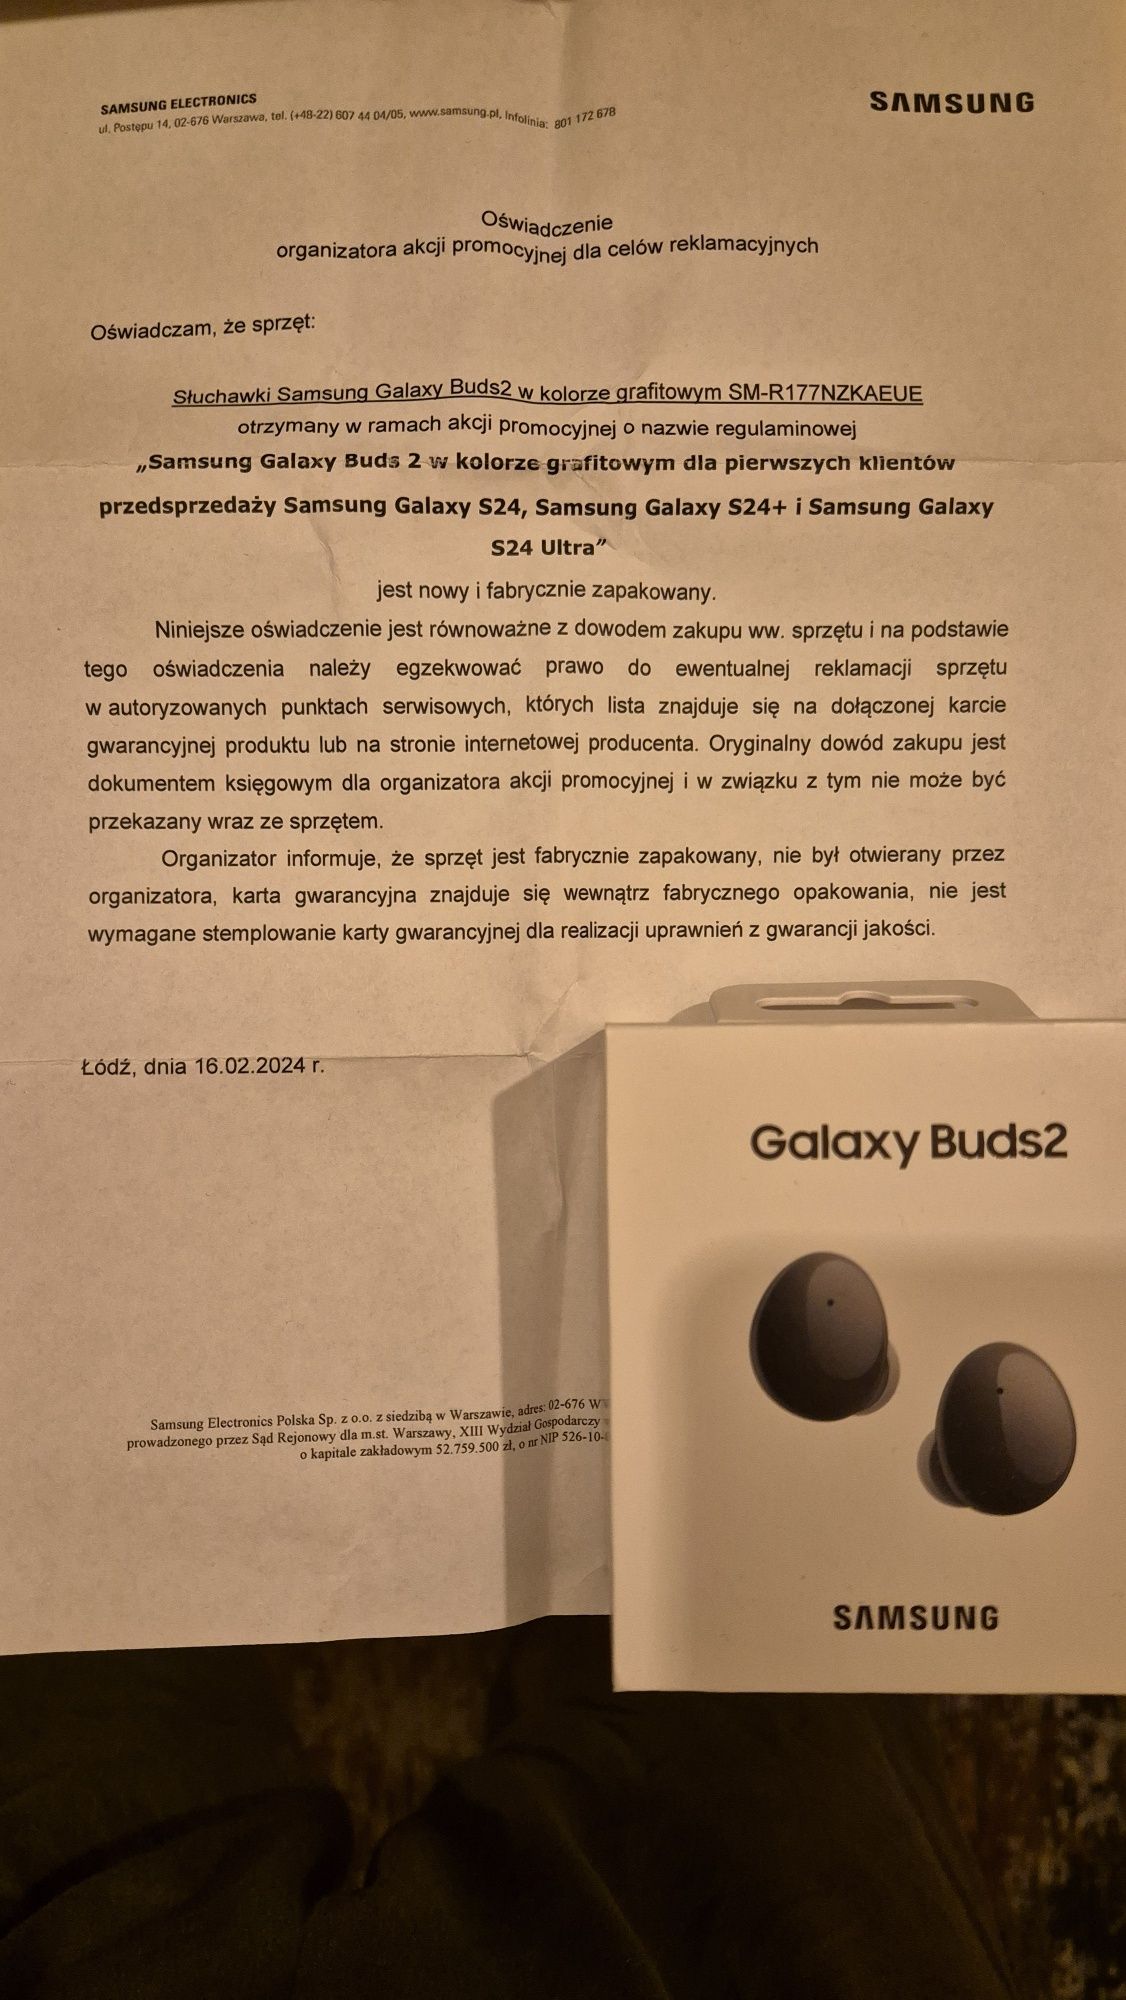 Samsung Galaxy Buds 2 - NOWE, nieodpakowane.